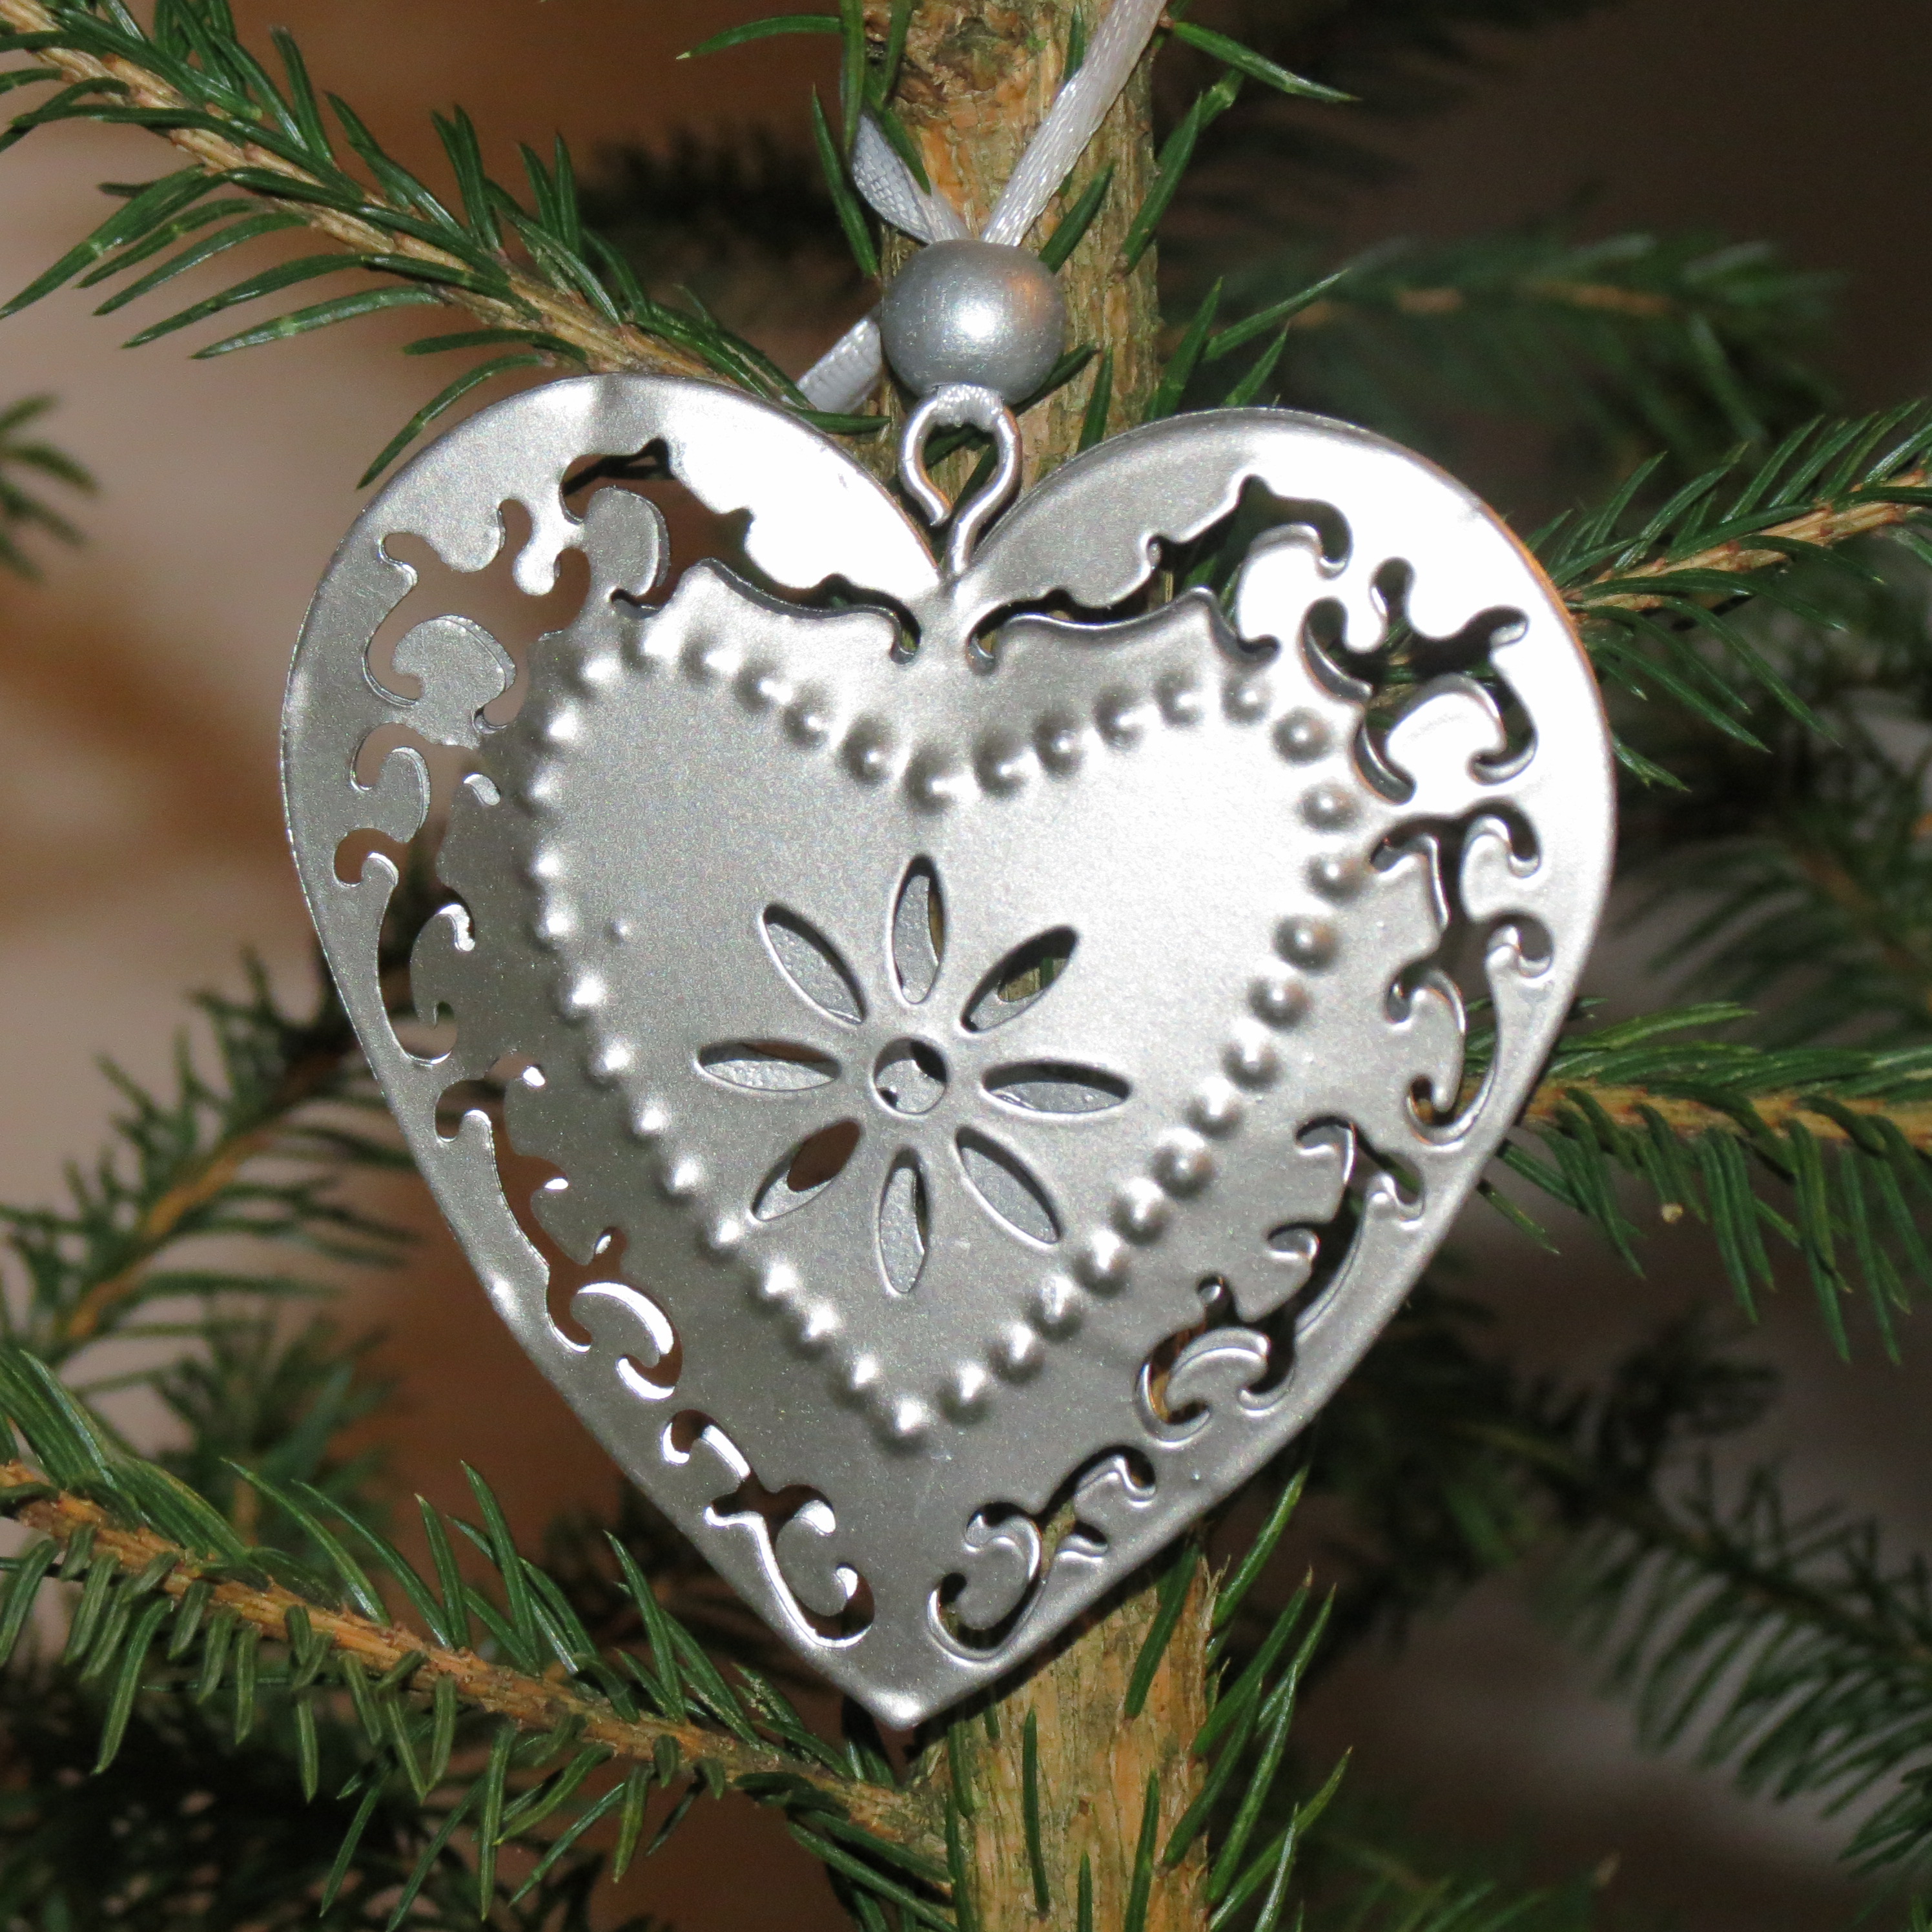 Vánoce 2015 – svátky klidu, míru a rodinné pohody